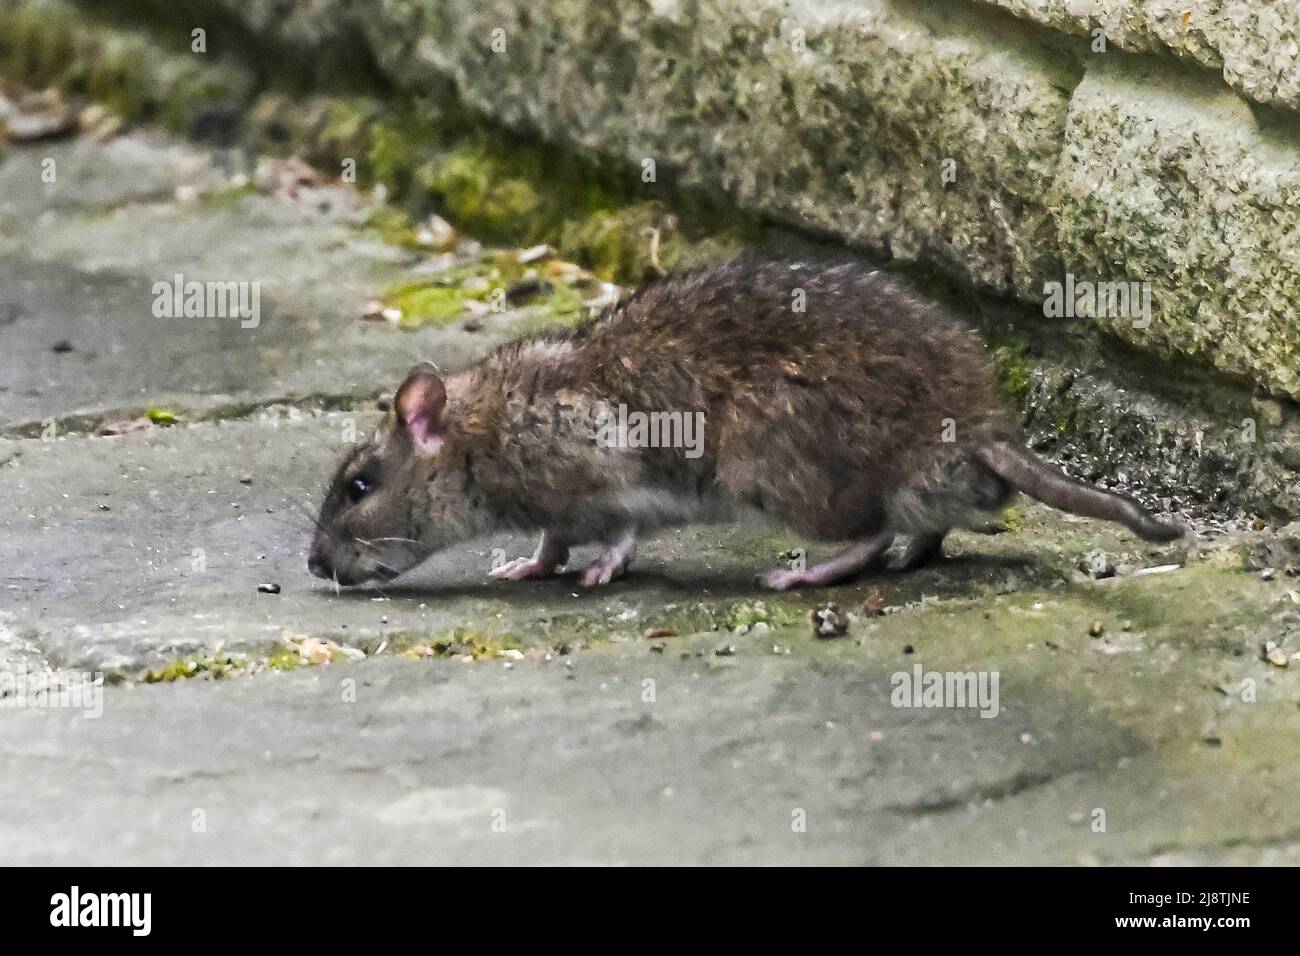 Eine braune Ratte - Rattus norvegicus auf einer Terrasse auf der Suche nach Nahrung, die von einem Futterhäuschen fallen gelassen wird. Bildnachweis: Graham Hunt/Alamy Stockfoto